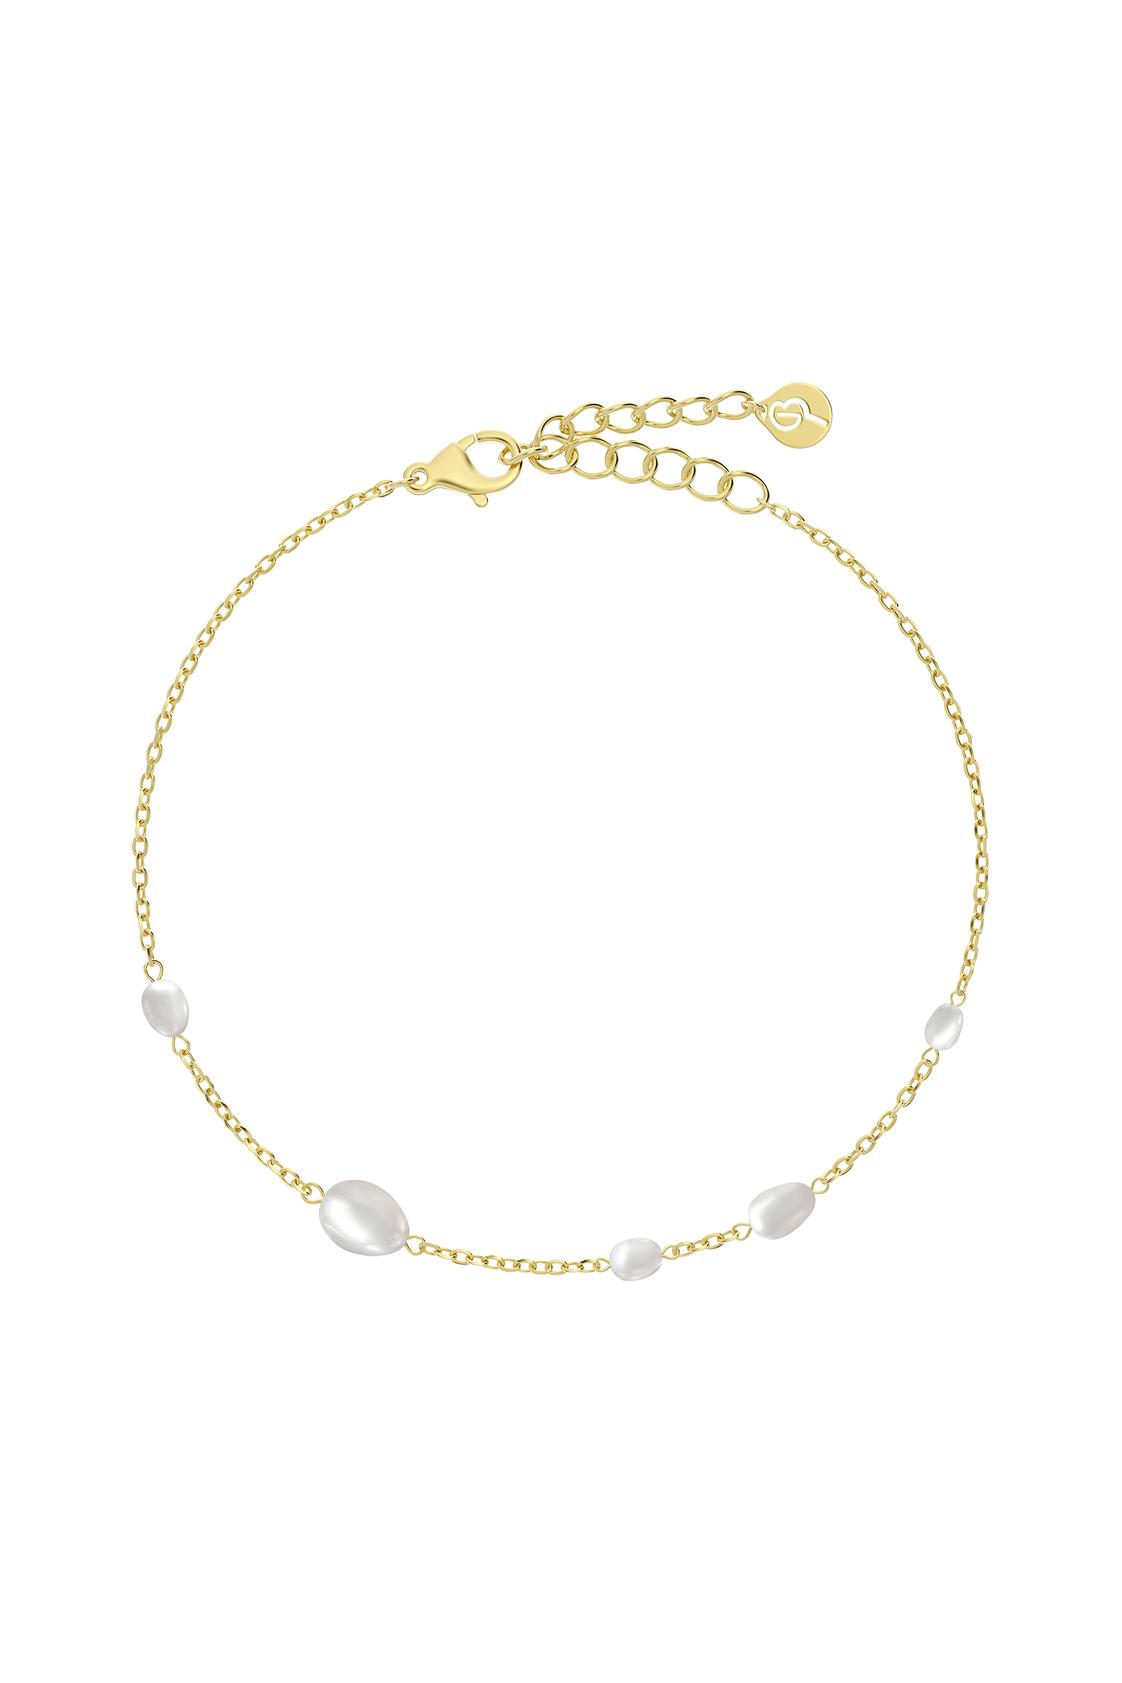 Ocean bracelet gold för 399 kr på MQ